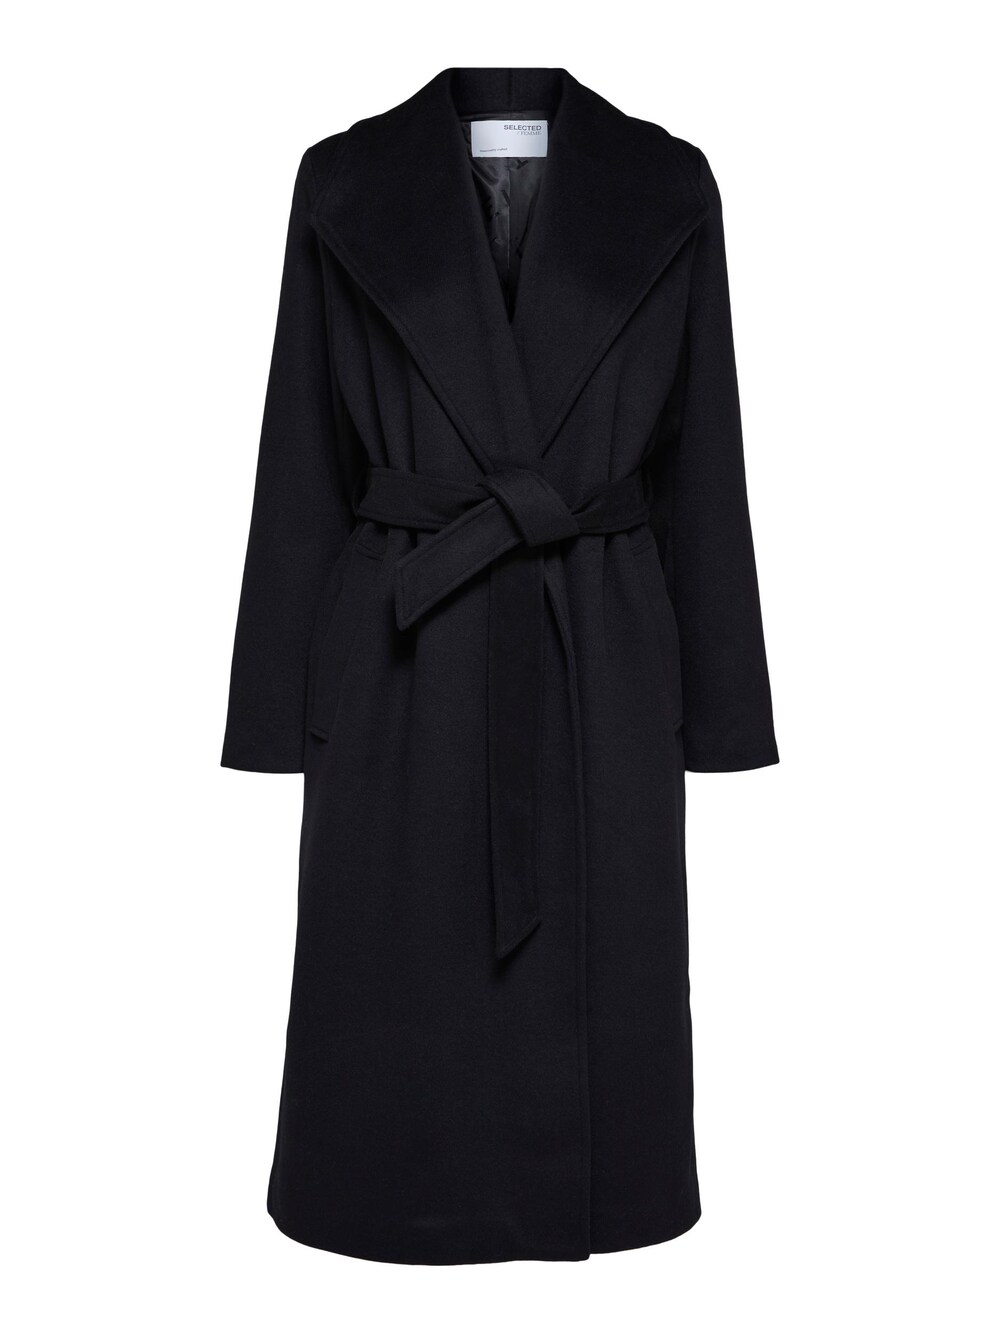 Межсезонное пальто Selected Rosa, черный межсезонное пальто selected new element черный